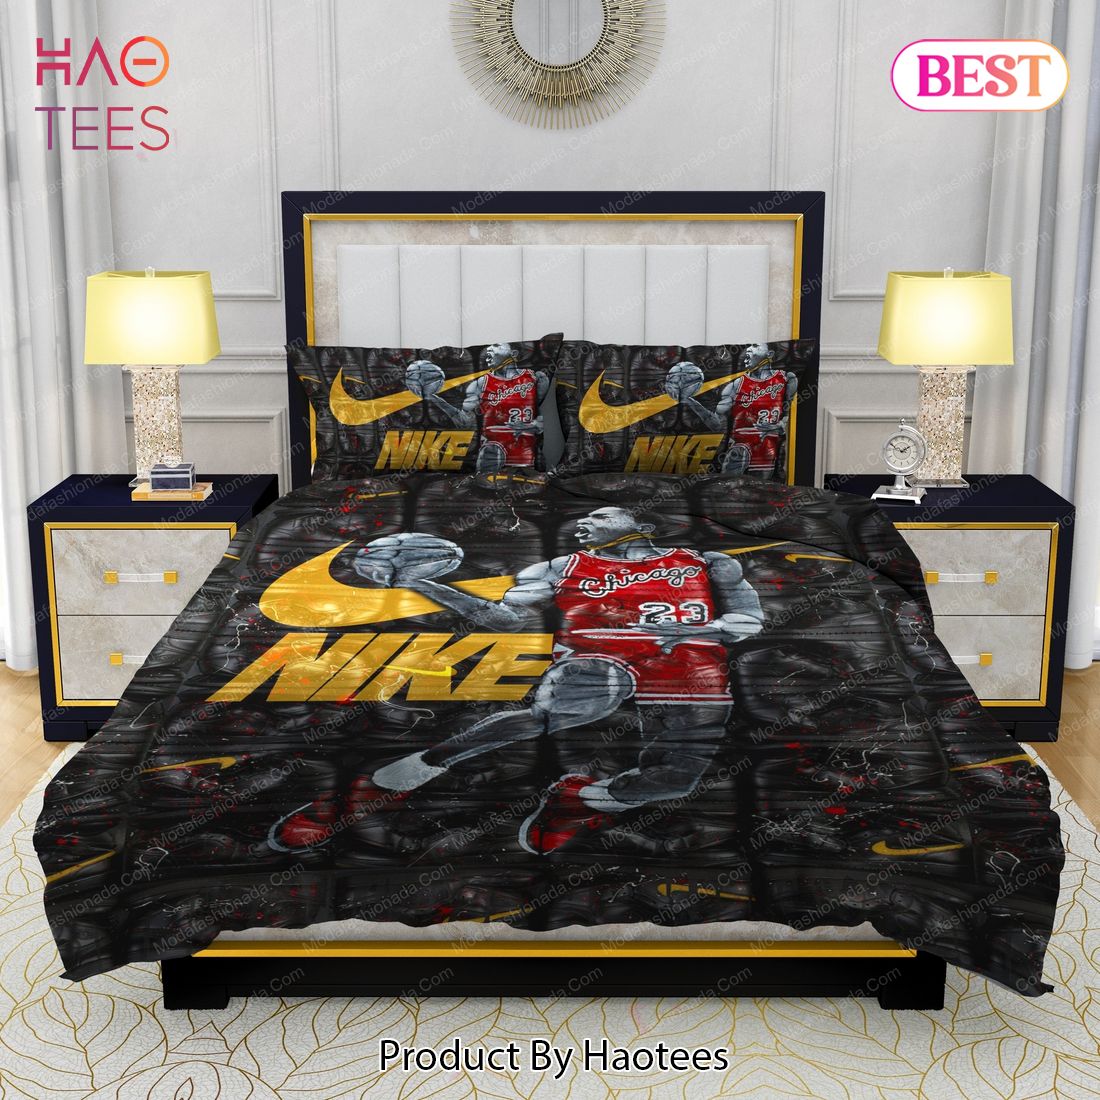 Famous Nike Air Jordan Design & Quality Comfortable 4 Pieces Bedding Set Bed Sets, Bedroom Sets, Comforter Sets, Duvet Cover, Bedspread